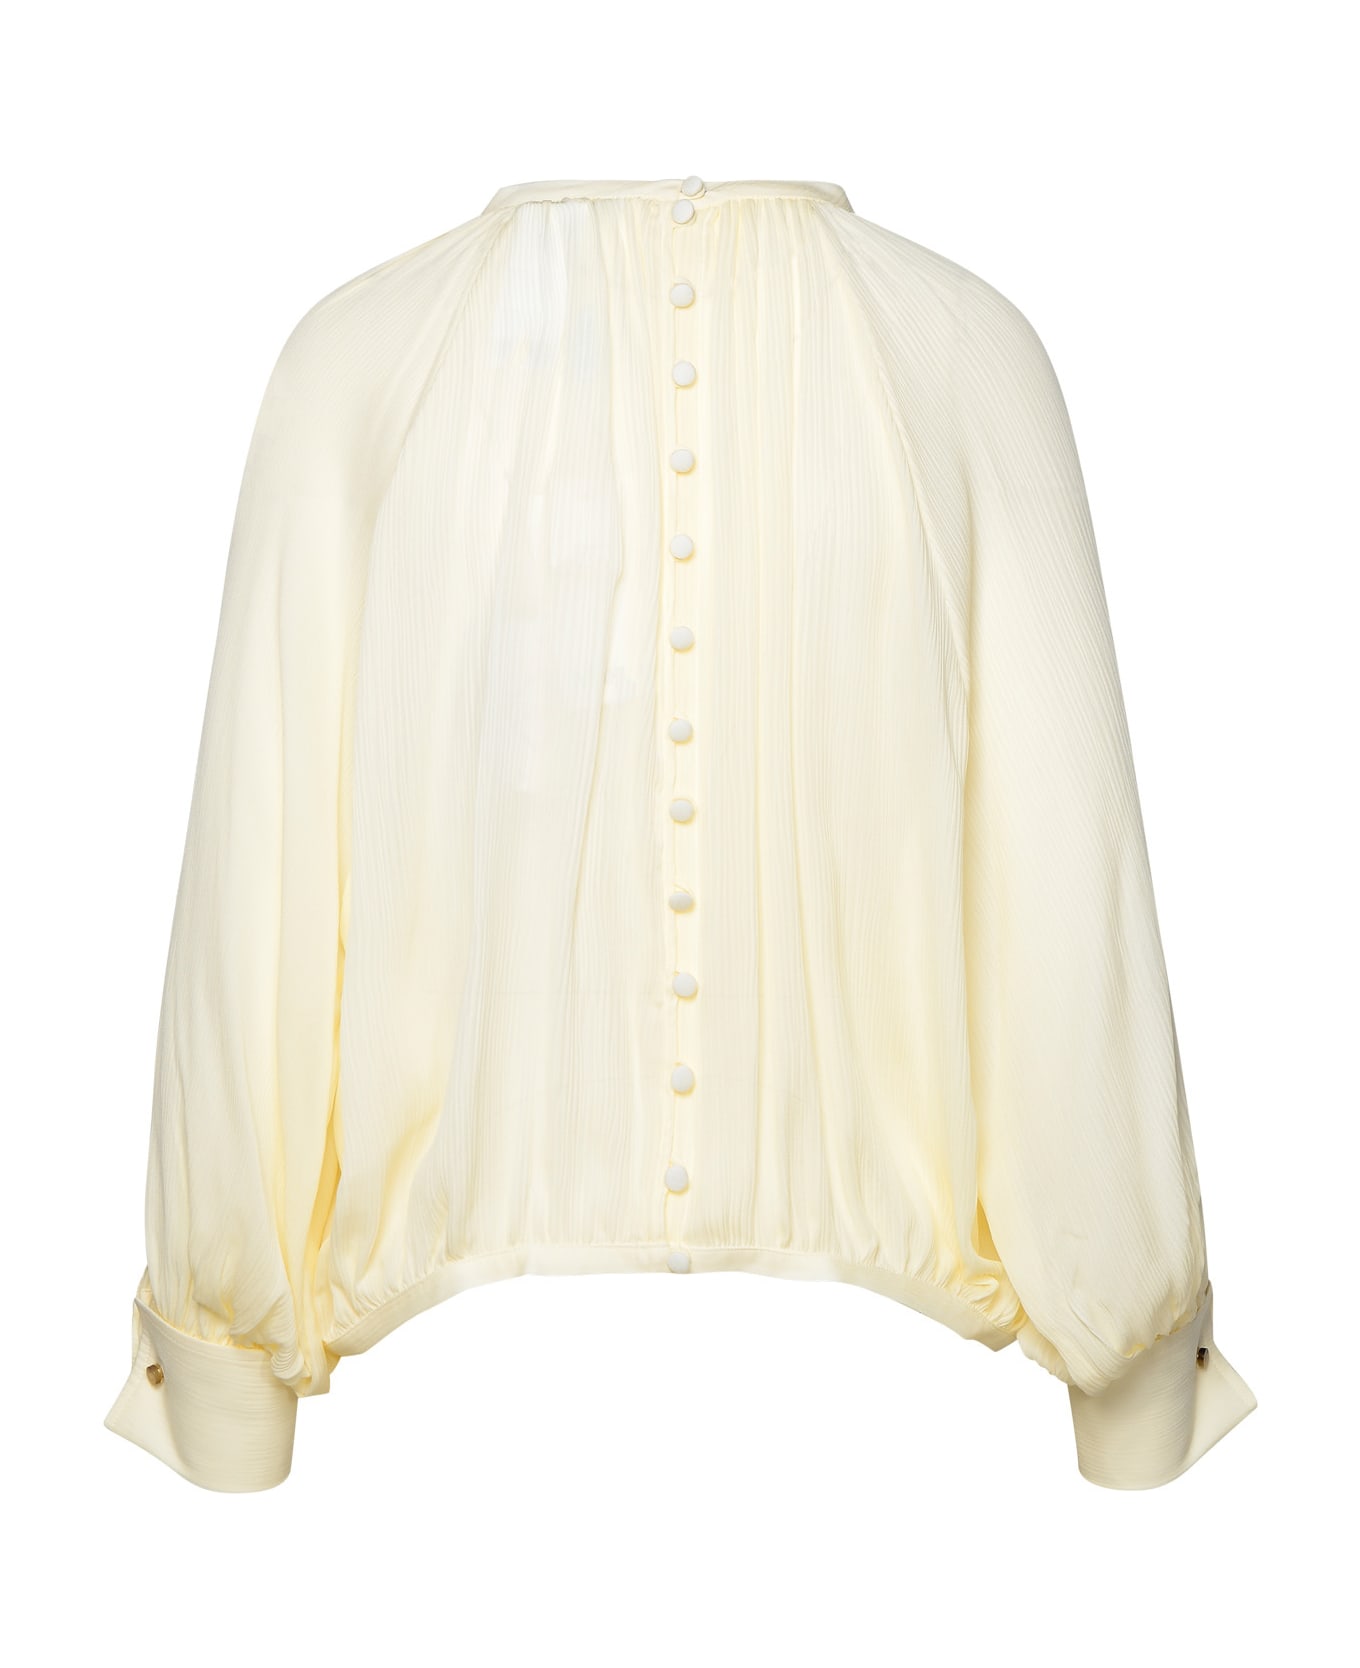 Max Mara Ivory Silk Shirt - Avorio